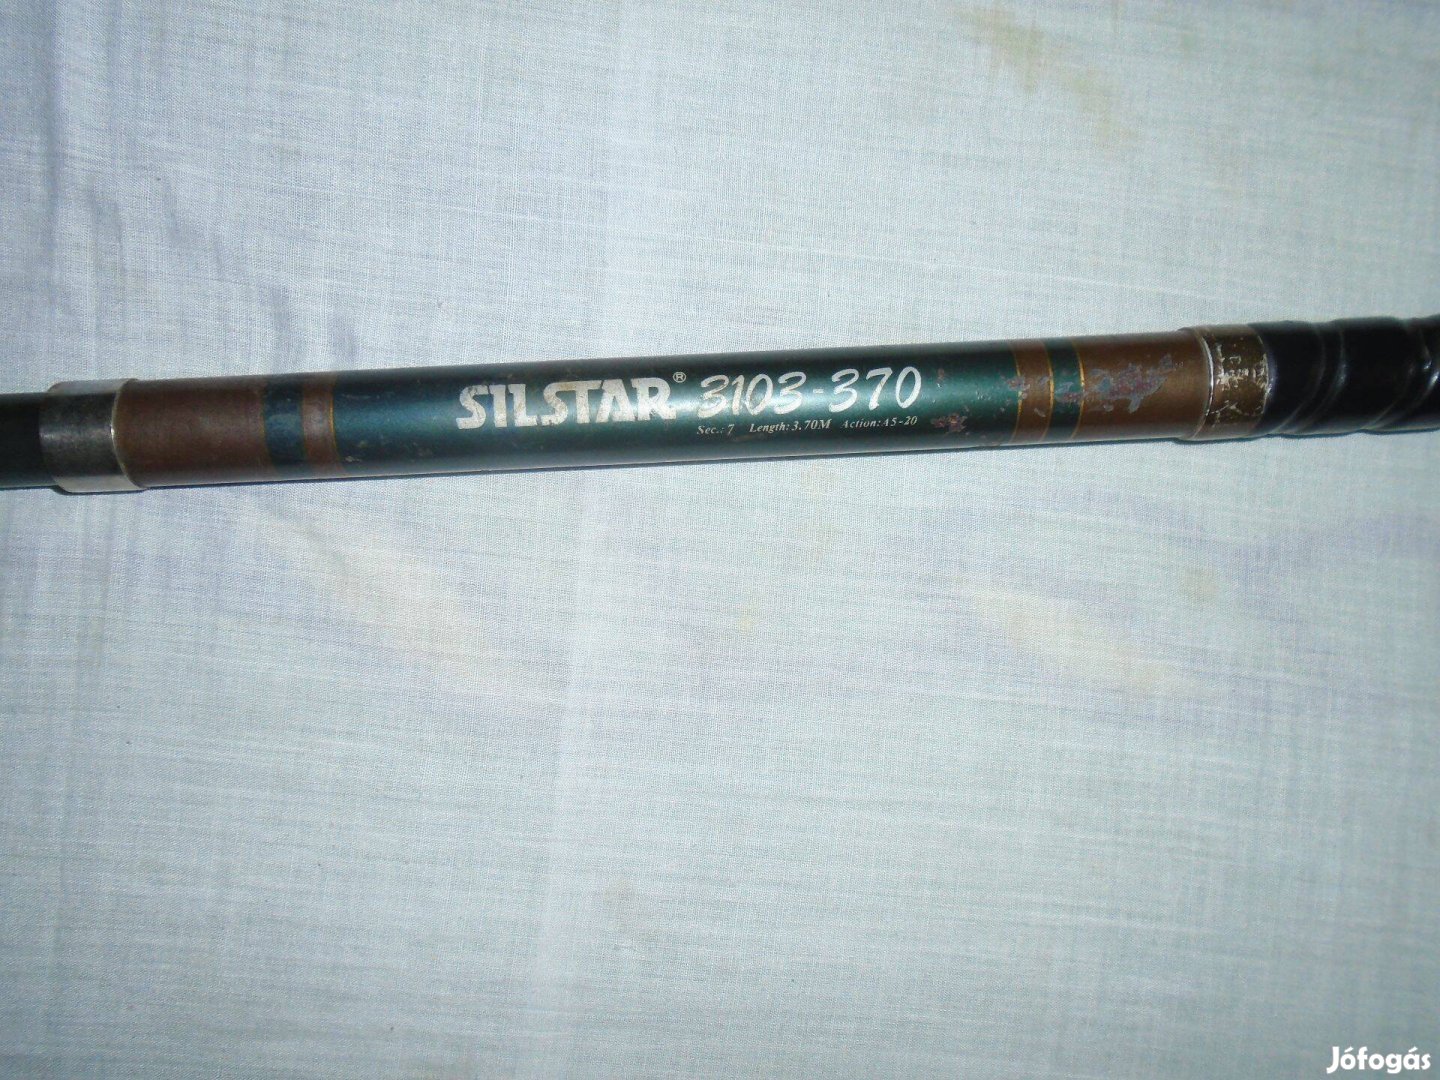 Silstar 3103-370 horgászbot 340 cm